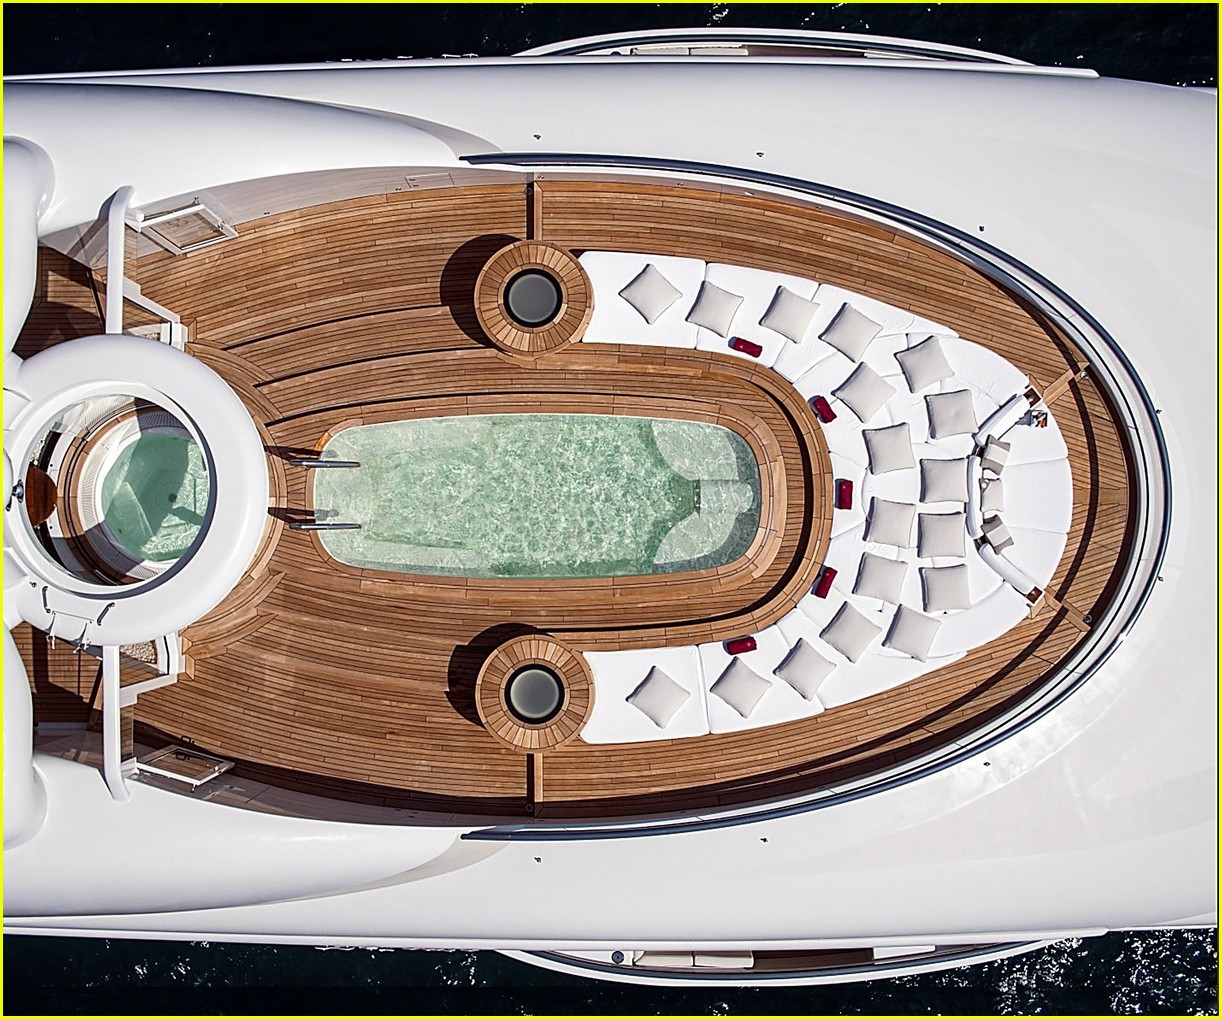 jennifer-lopez-ben-affleck-inside-the-yacht-they-stayed-on-03